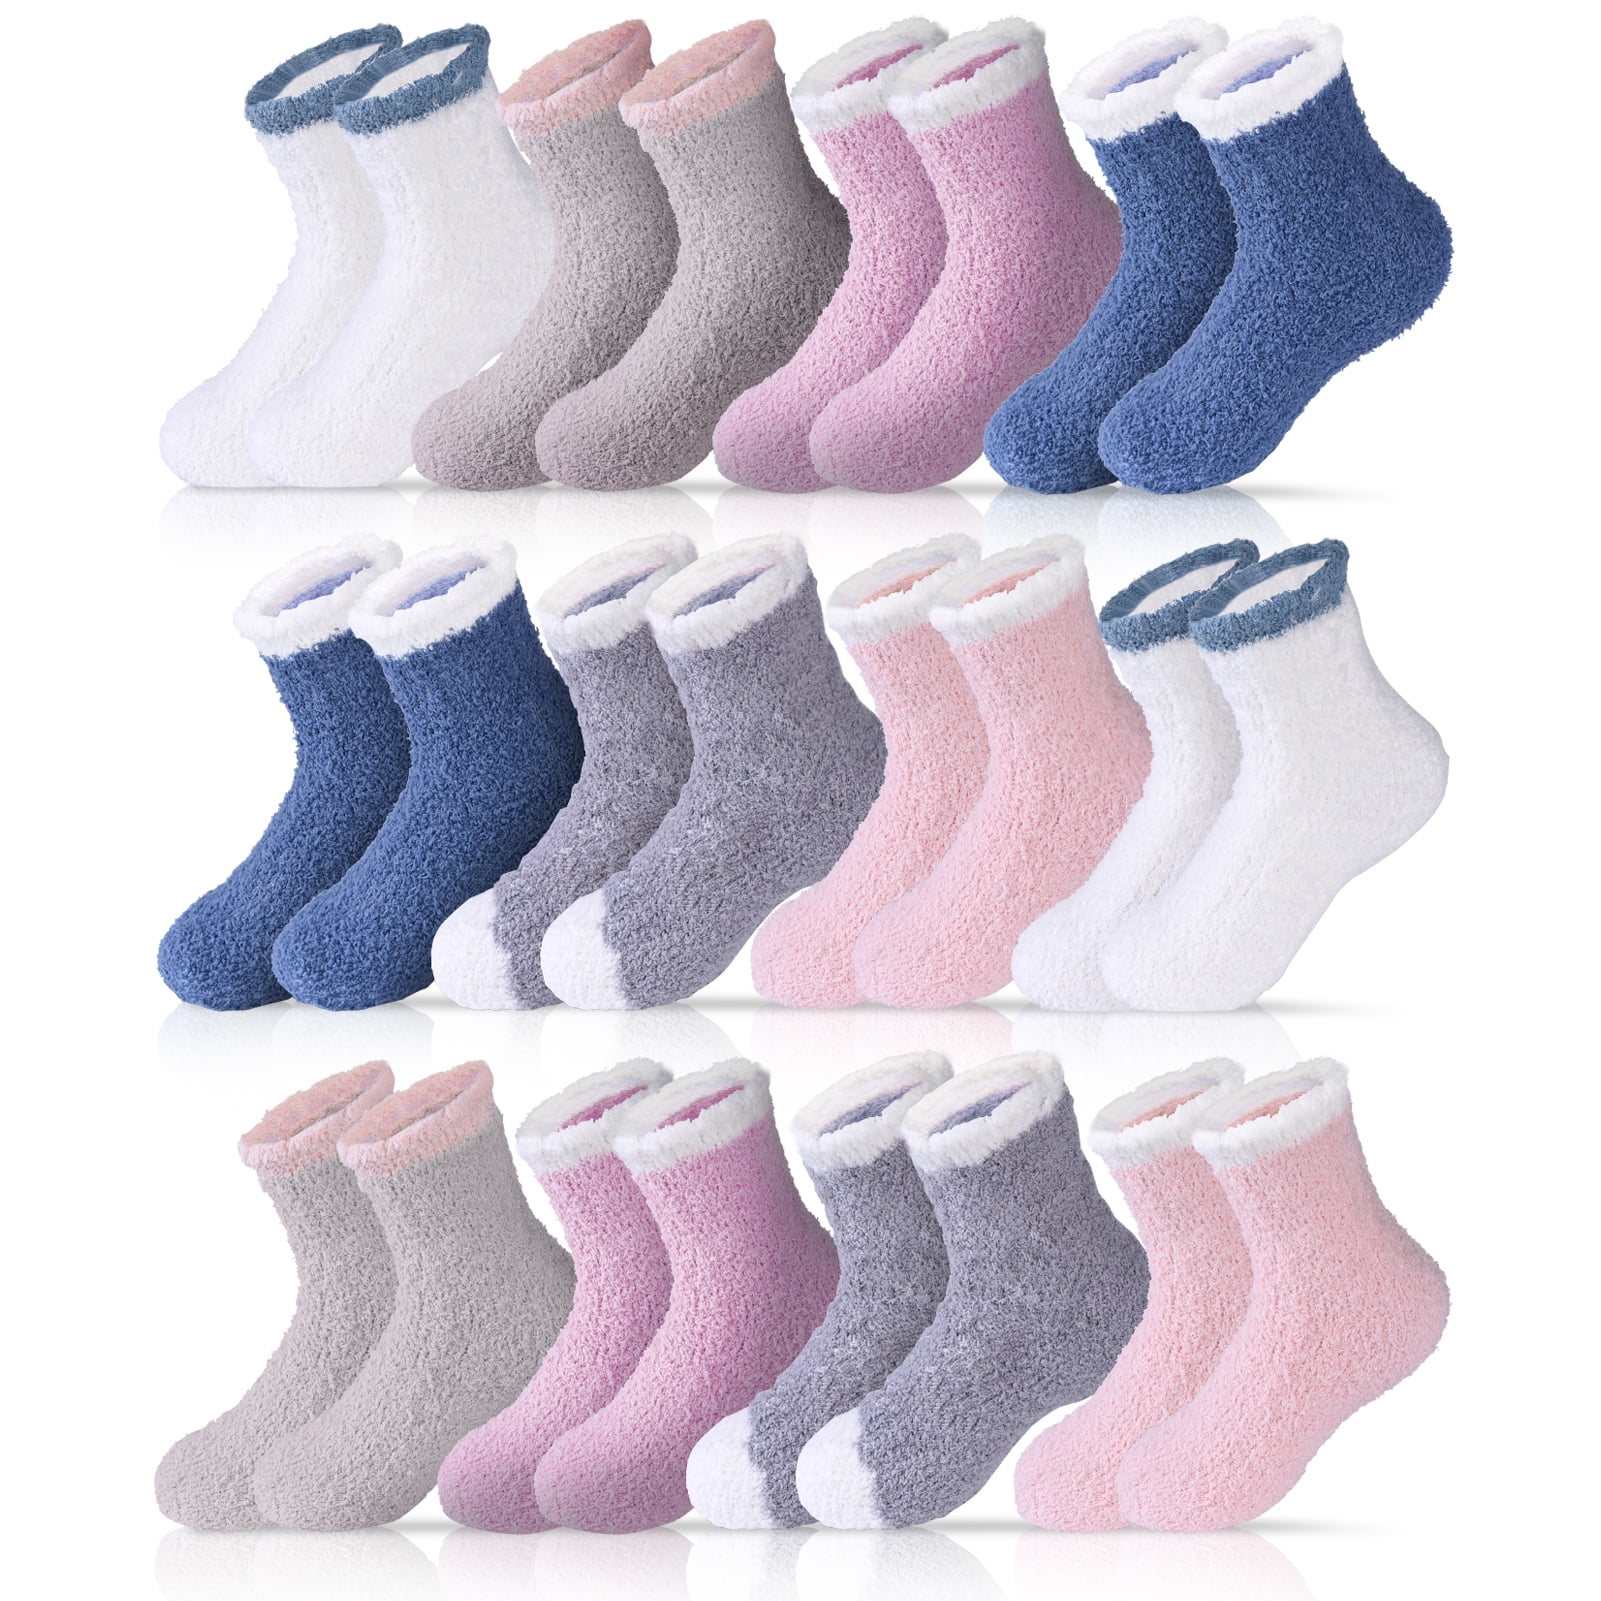 Bocaoying 12 Pairs Women Fuzzy Socks, Cozy Soft Fluffy Slipper Socks ...